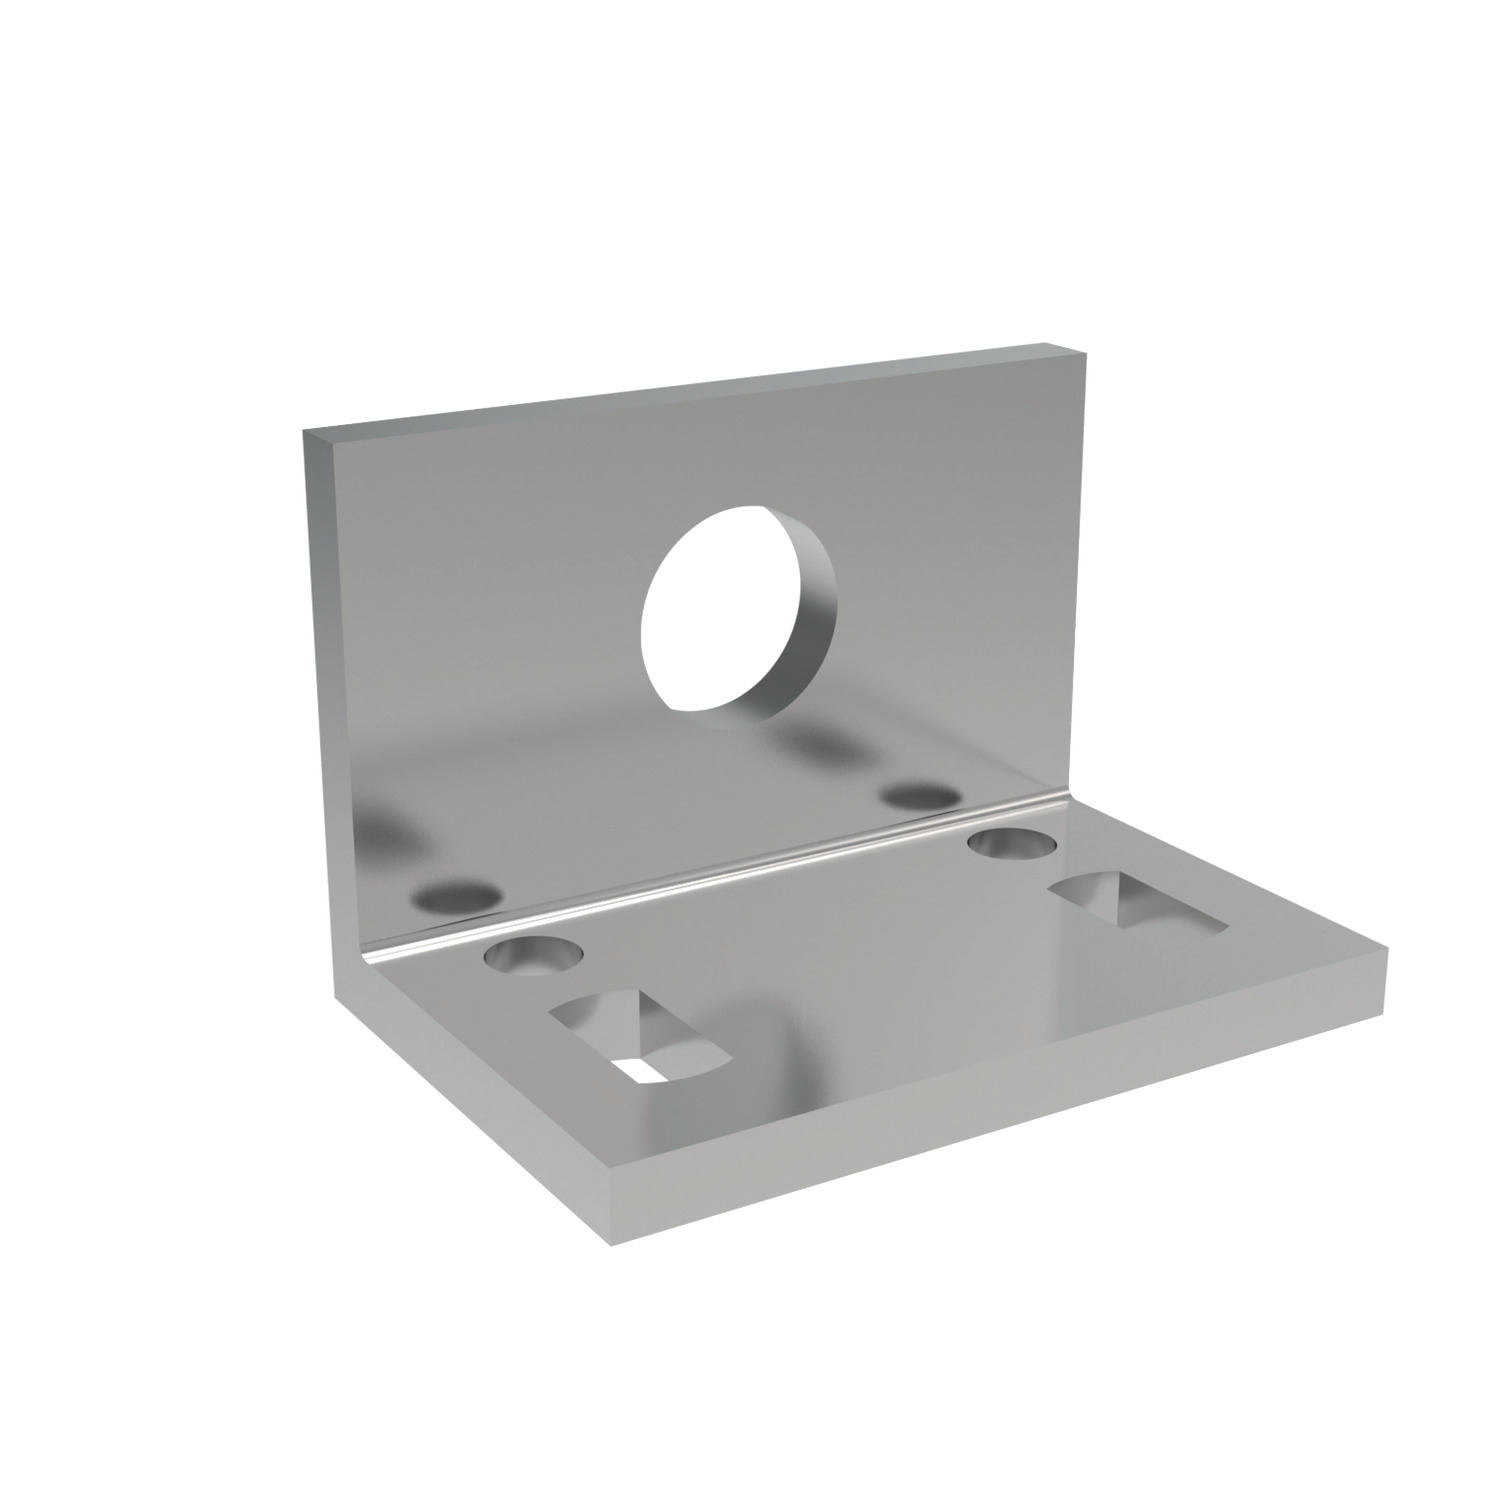 41880.W0502 Angle Plates - Zinc Plated 2 - 60 - 11,0 - 11-18